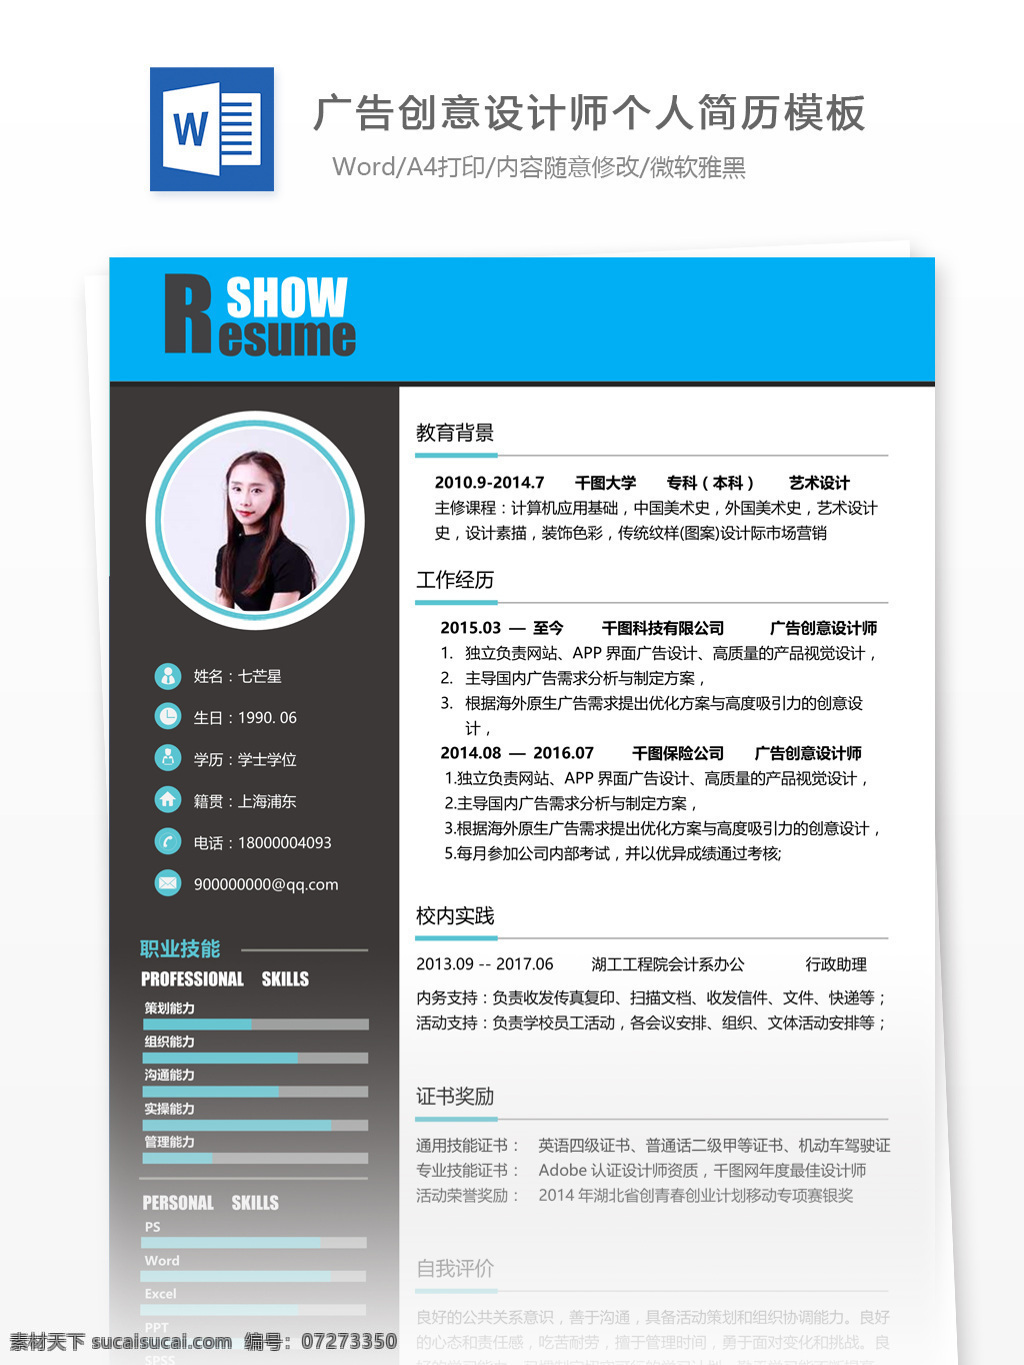 上海 广告创意 设计师 求职 简历 个人简历 简历模板 13年 模板